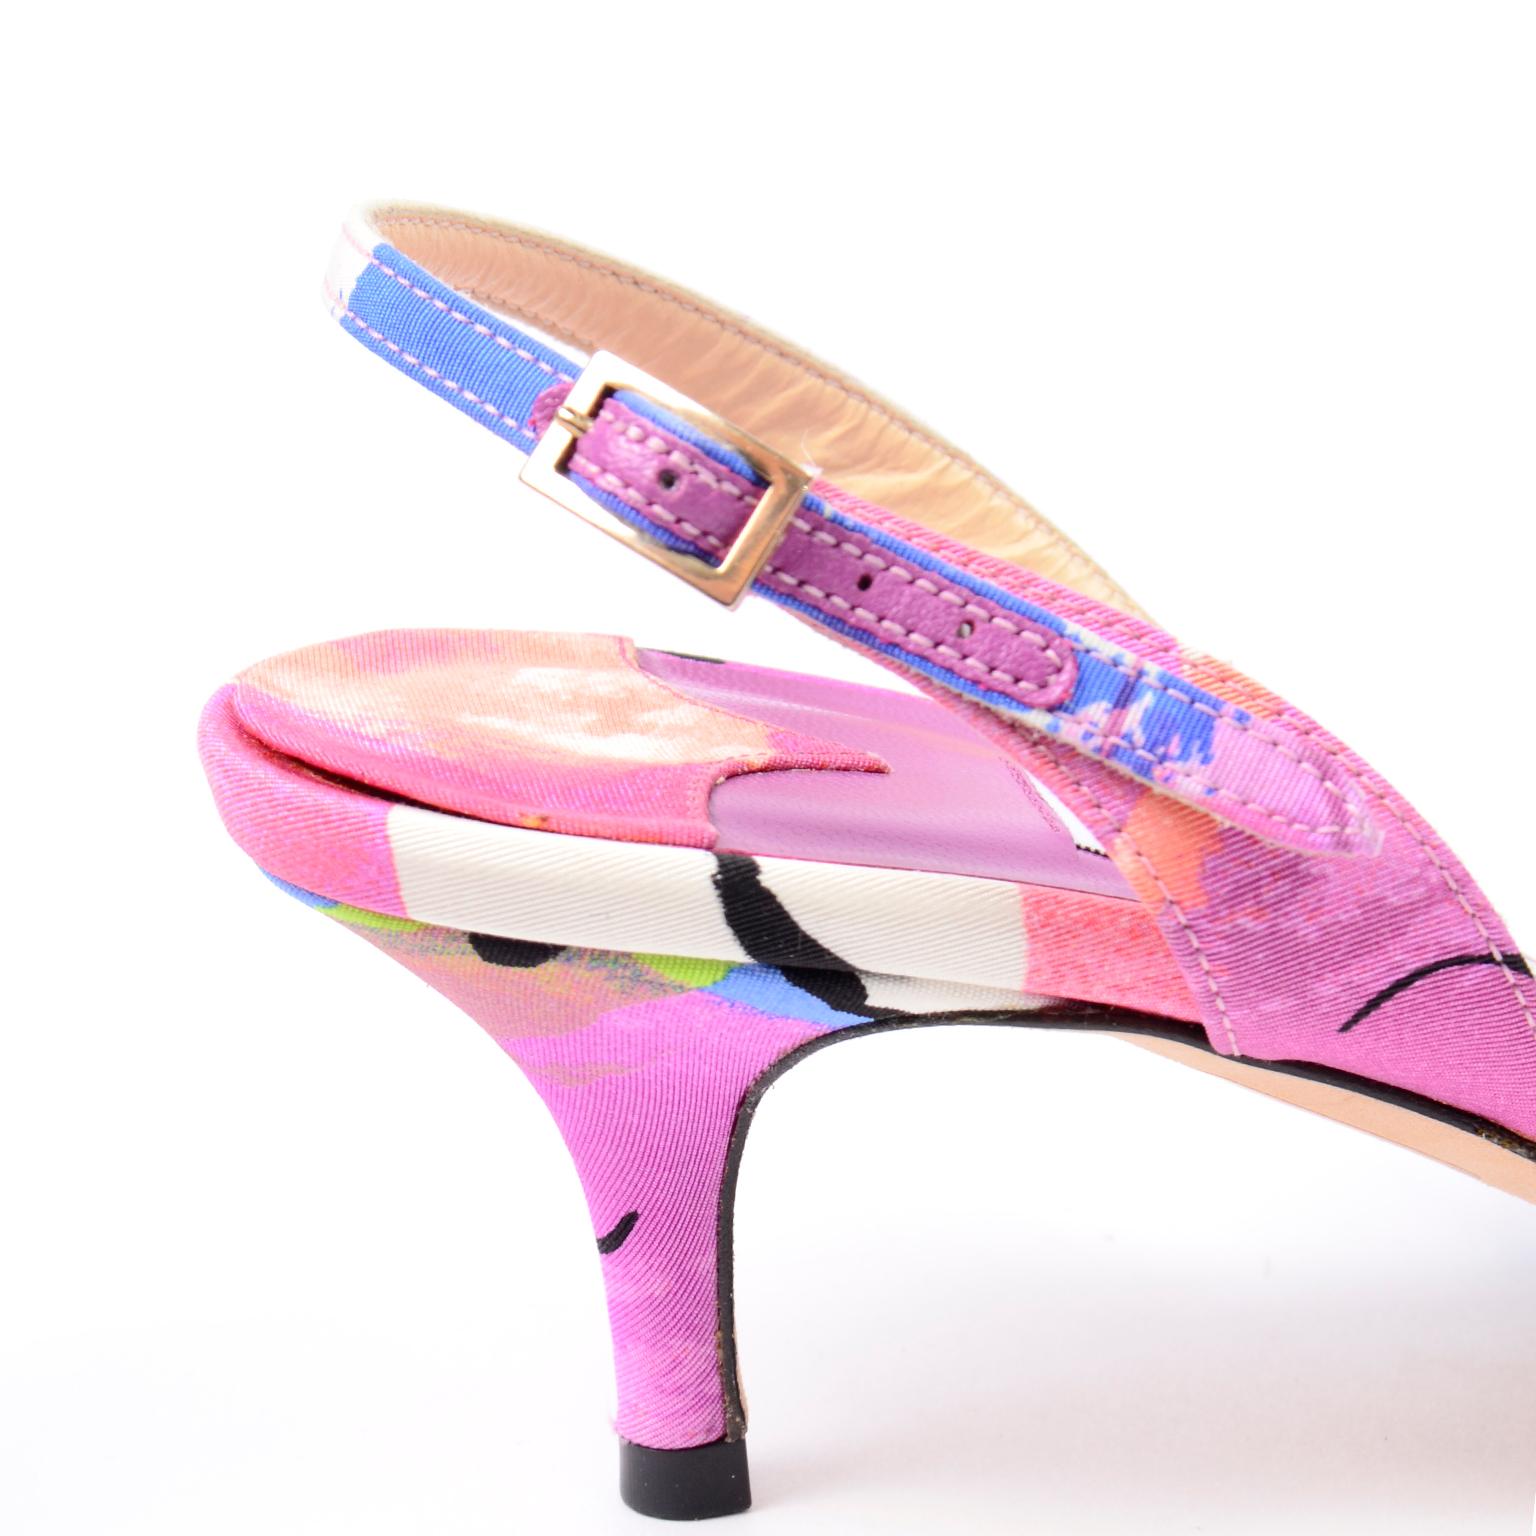 Jimmy Choo - Chaussures à fleurs roses - Talons aiguilles 1